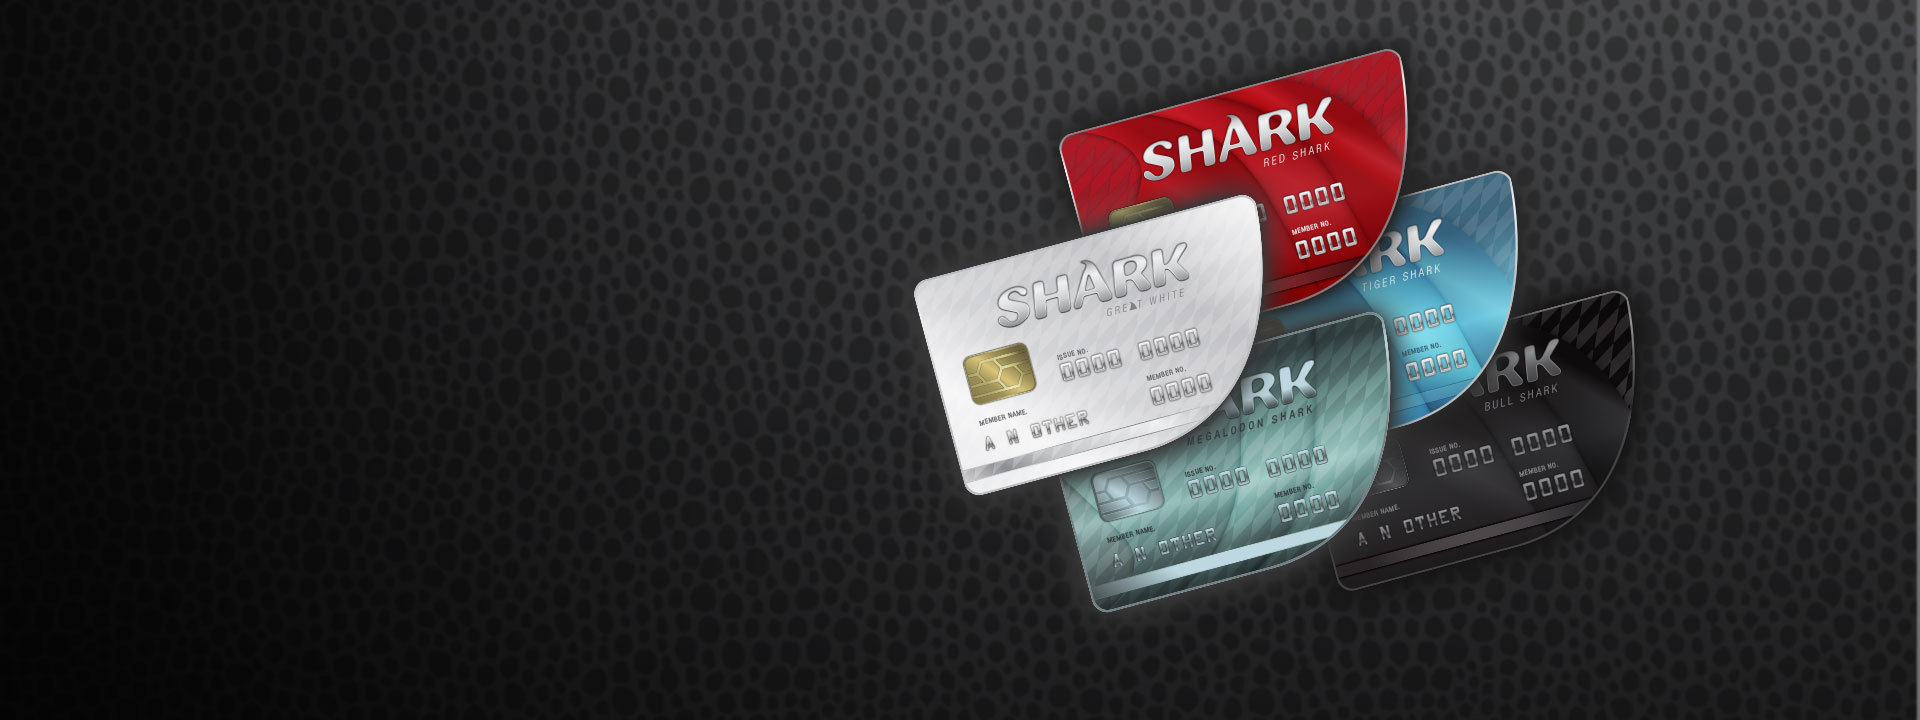 Öt különböző színű Shark hitelkártya sorakozik egymás mellett. 